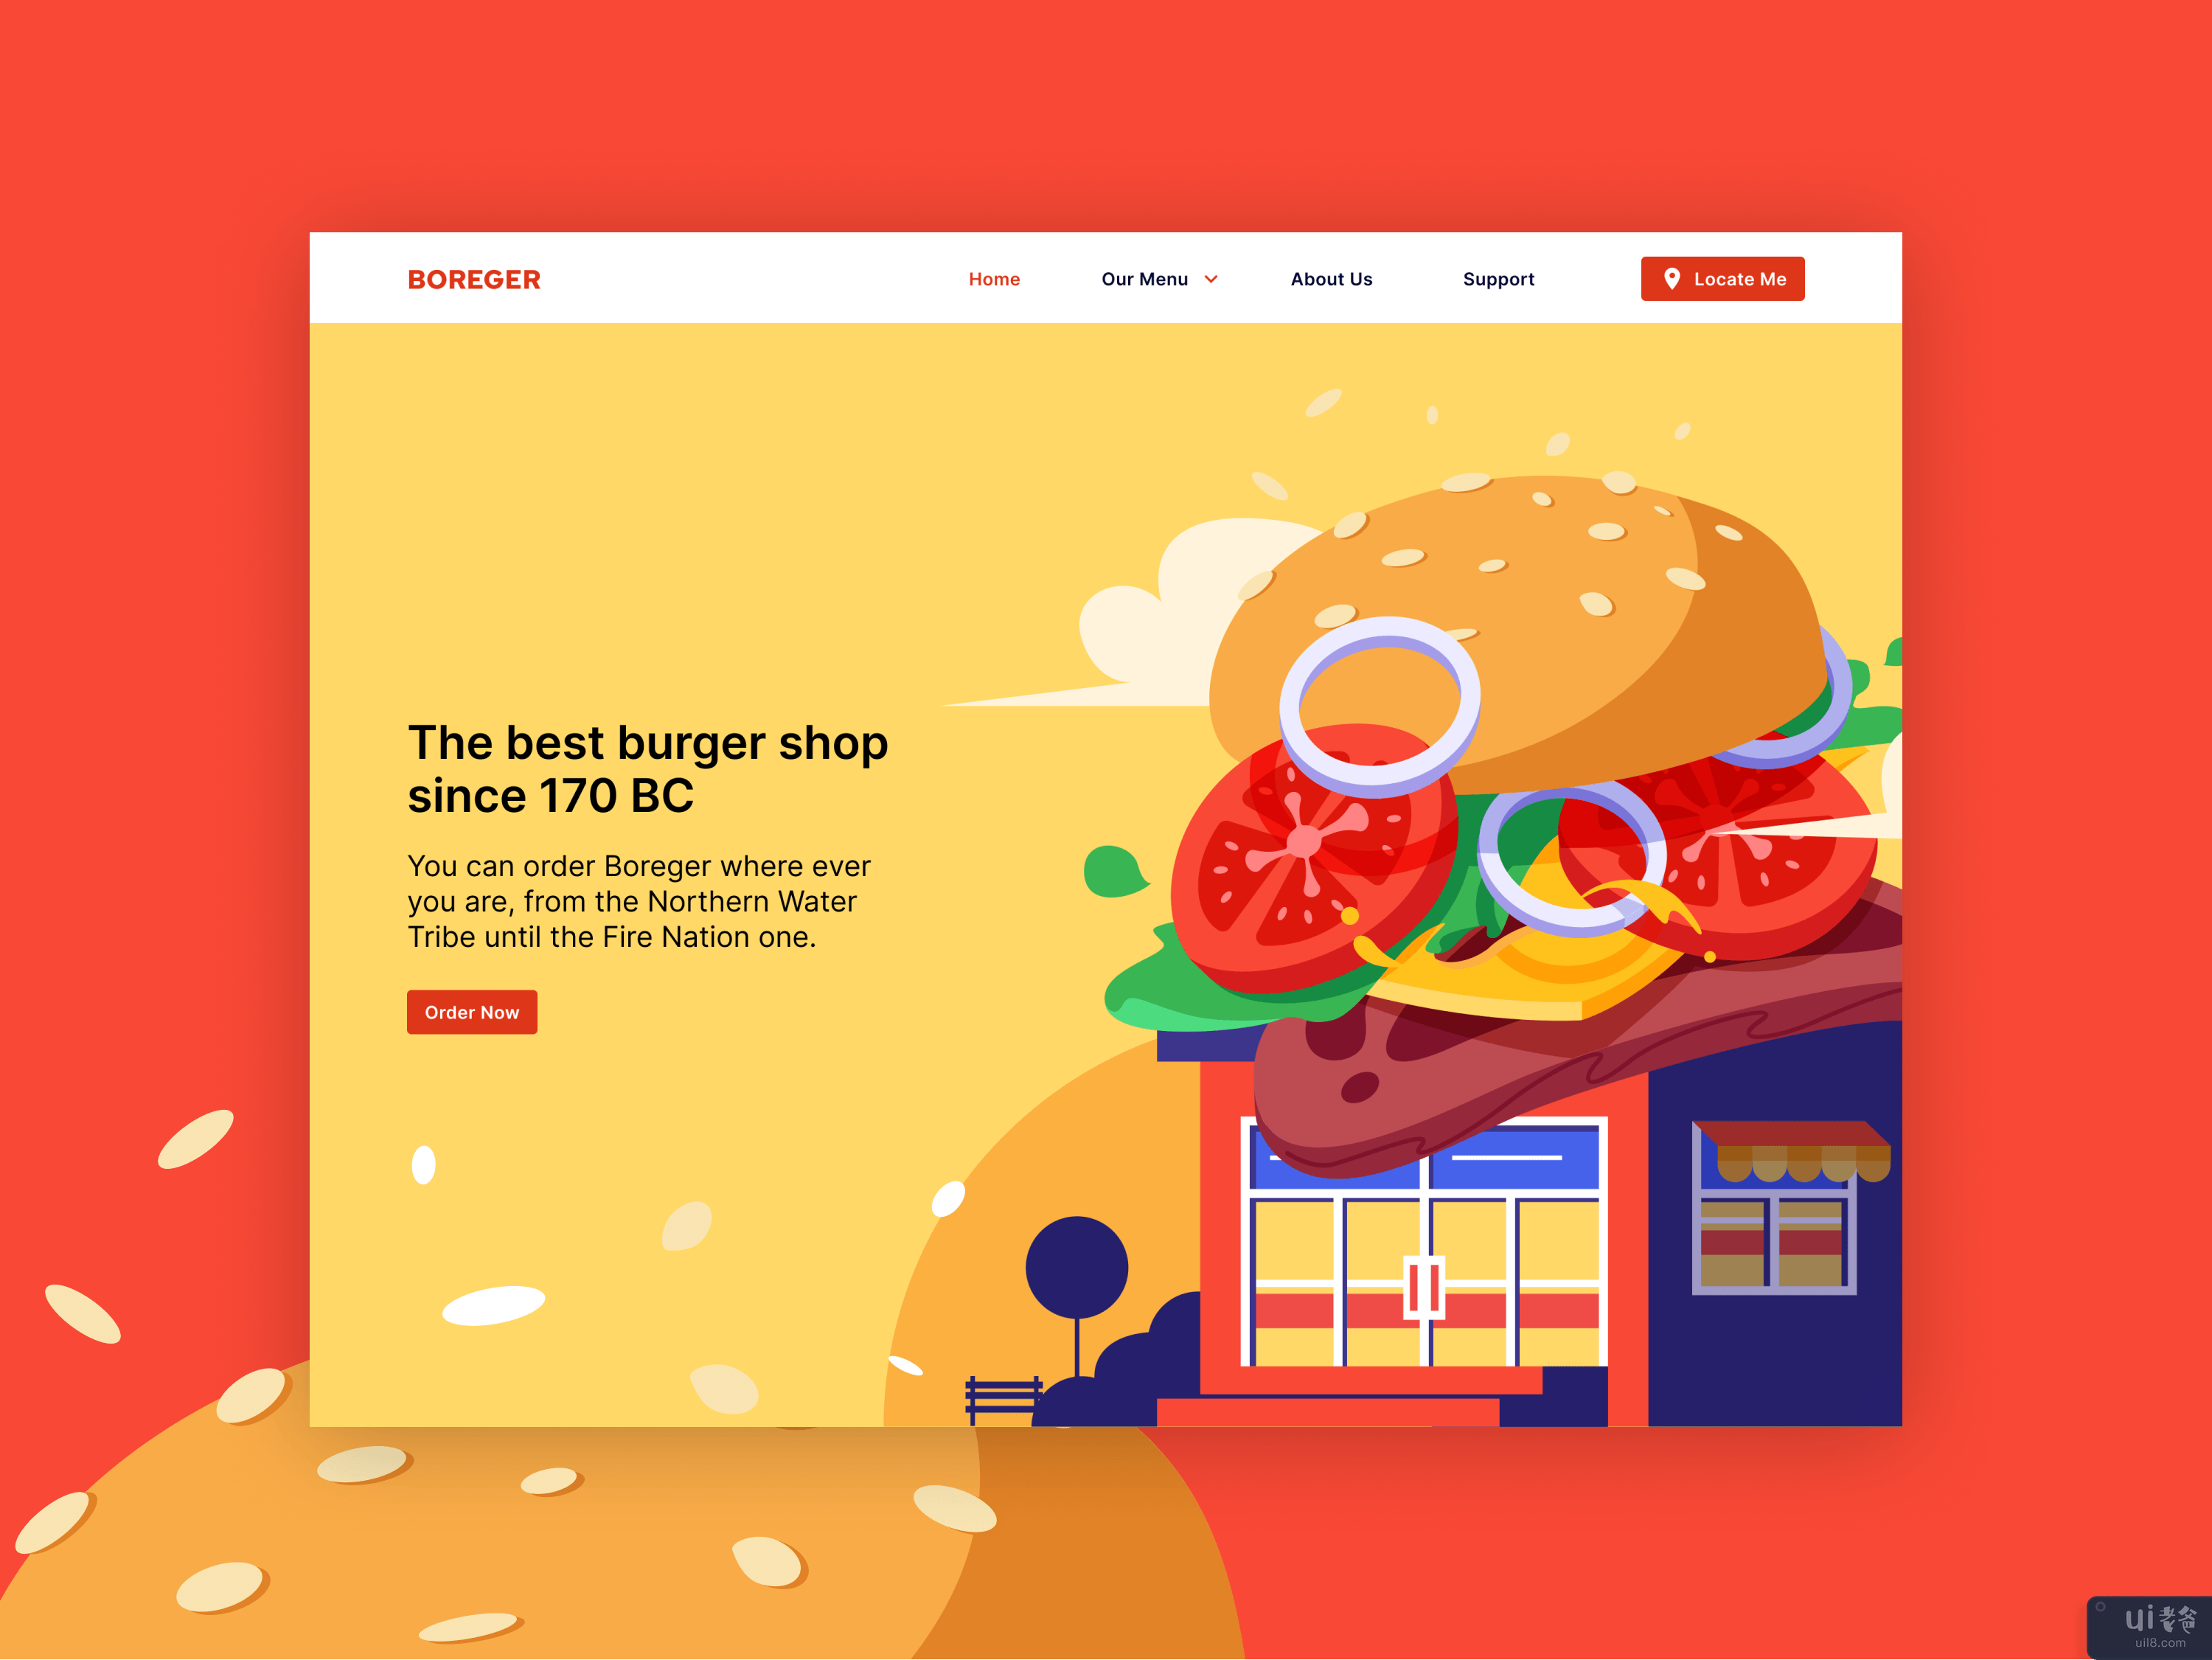 汉堡店图(Burger shop illustration)插图2